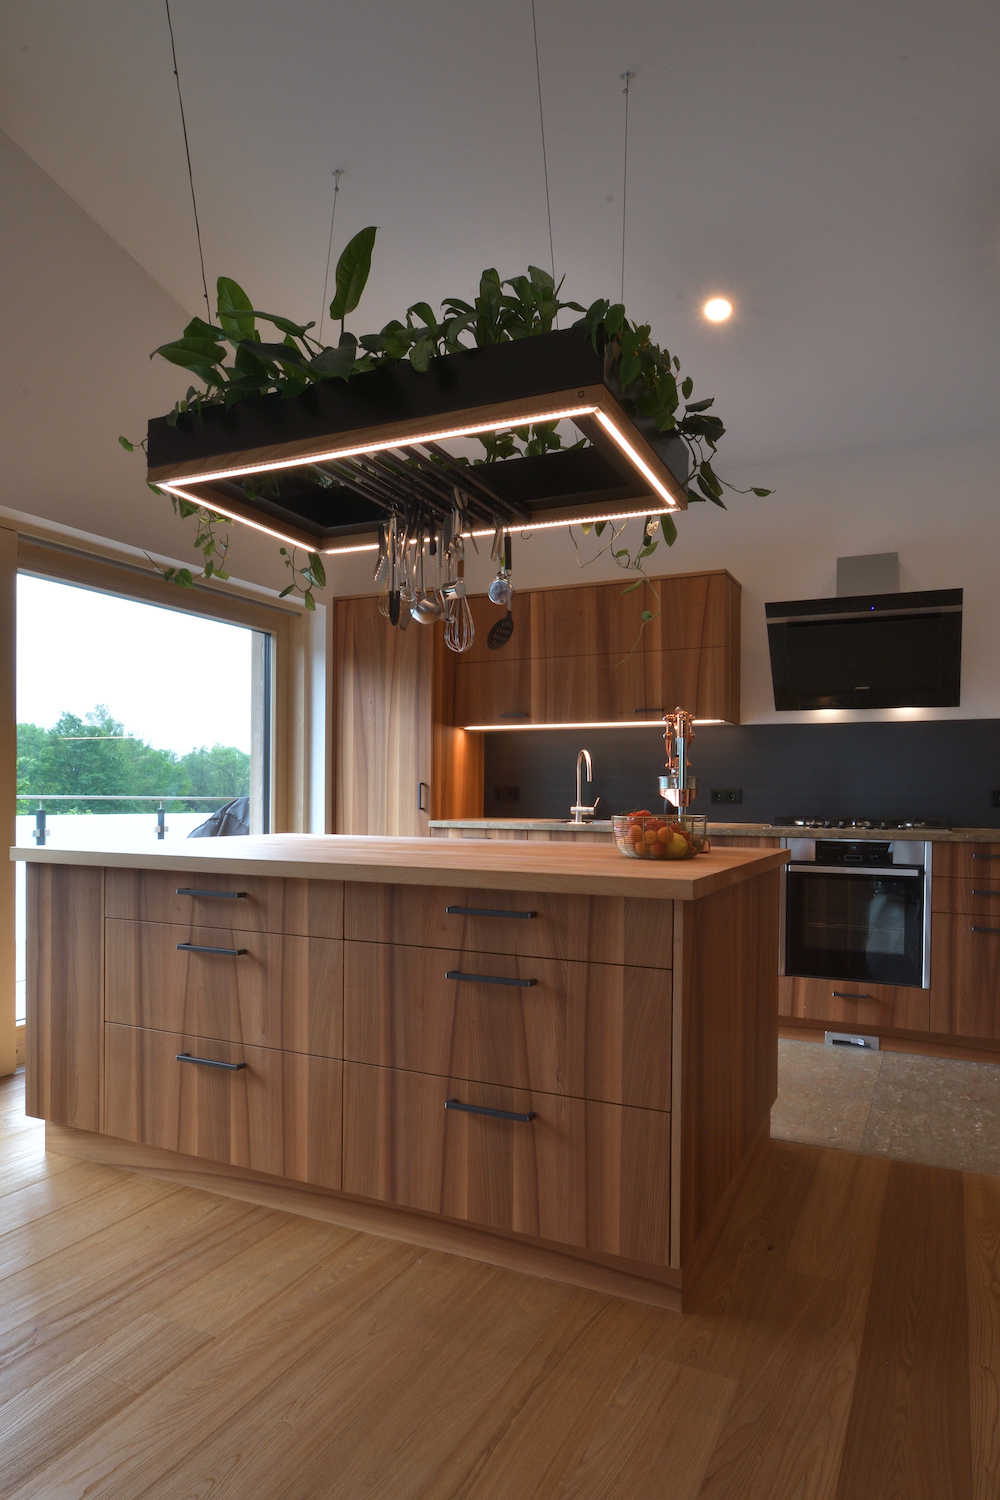 Küche mit Ulme und hängenden Pflanzen, Kücheninsel - Holzquadrat OHG